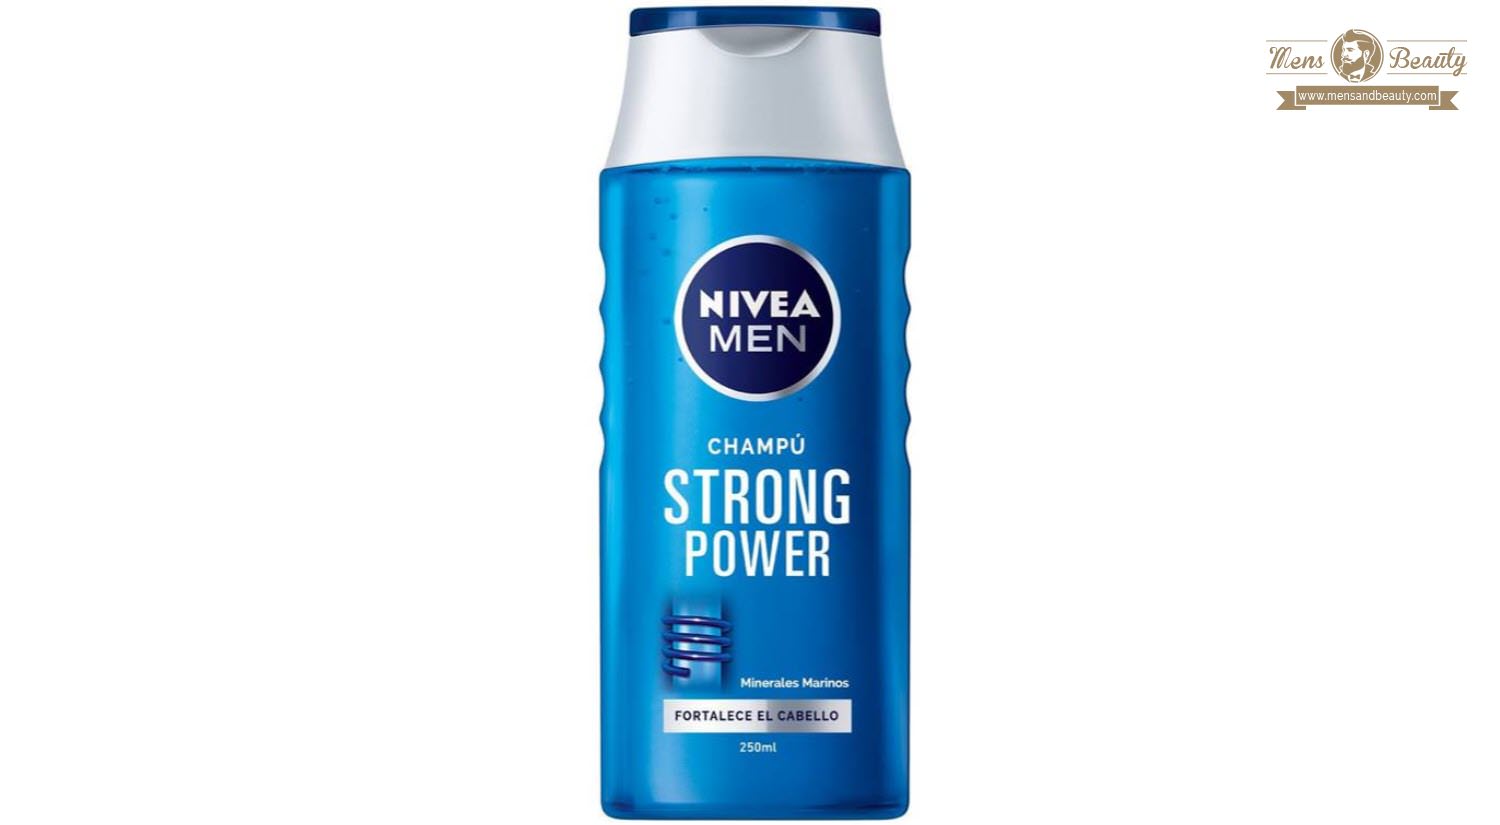 mejores productos para hombre shampoos nivea men champu strong power